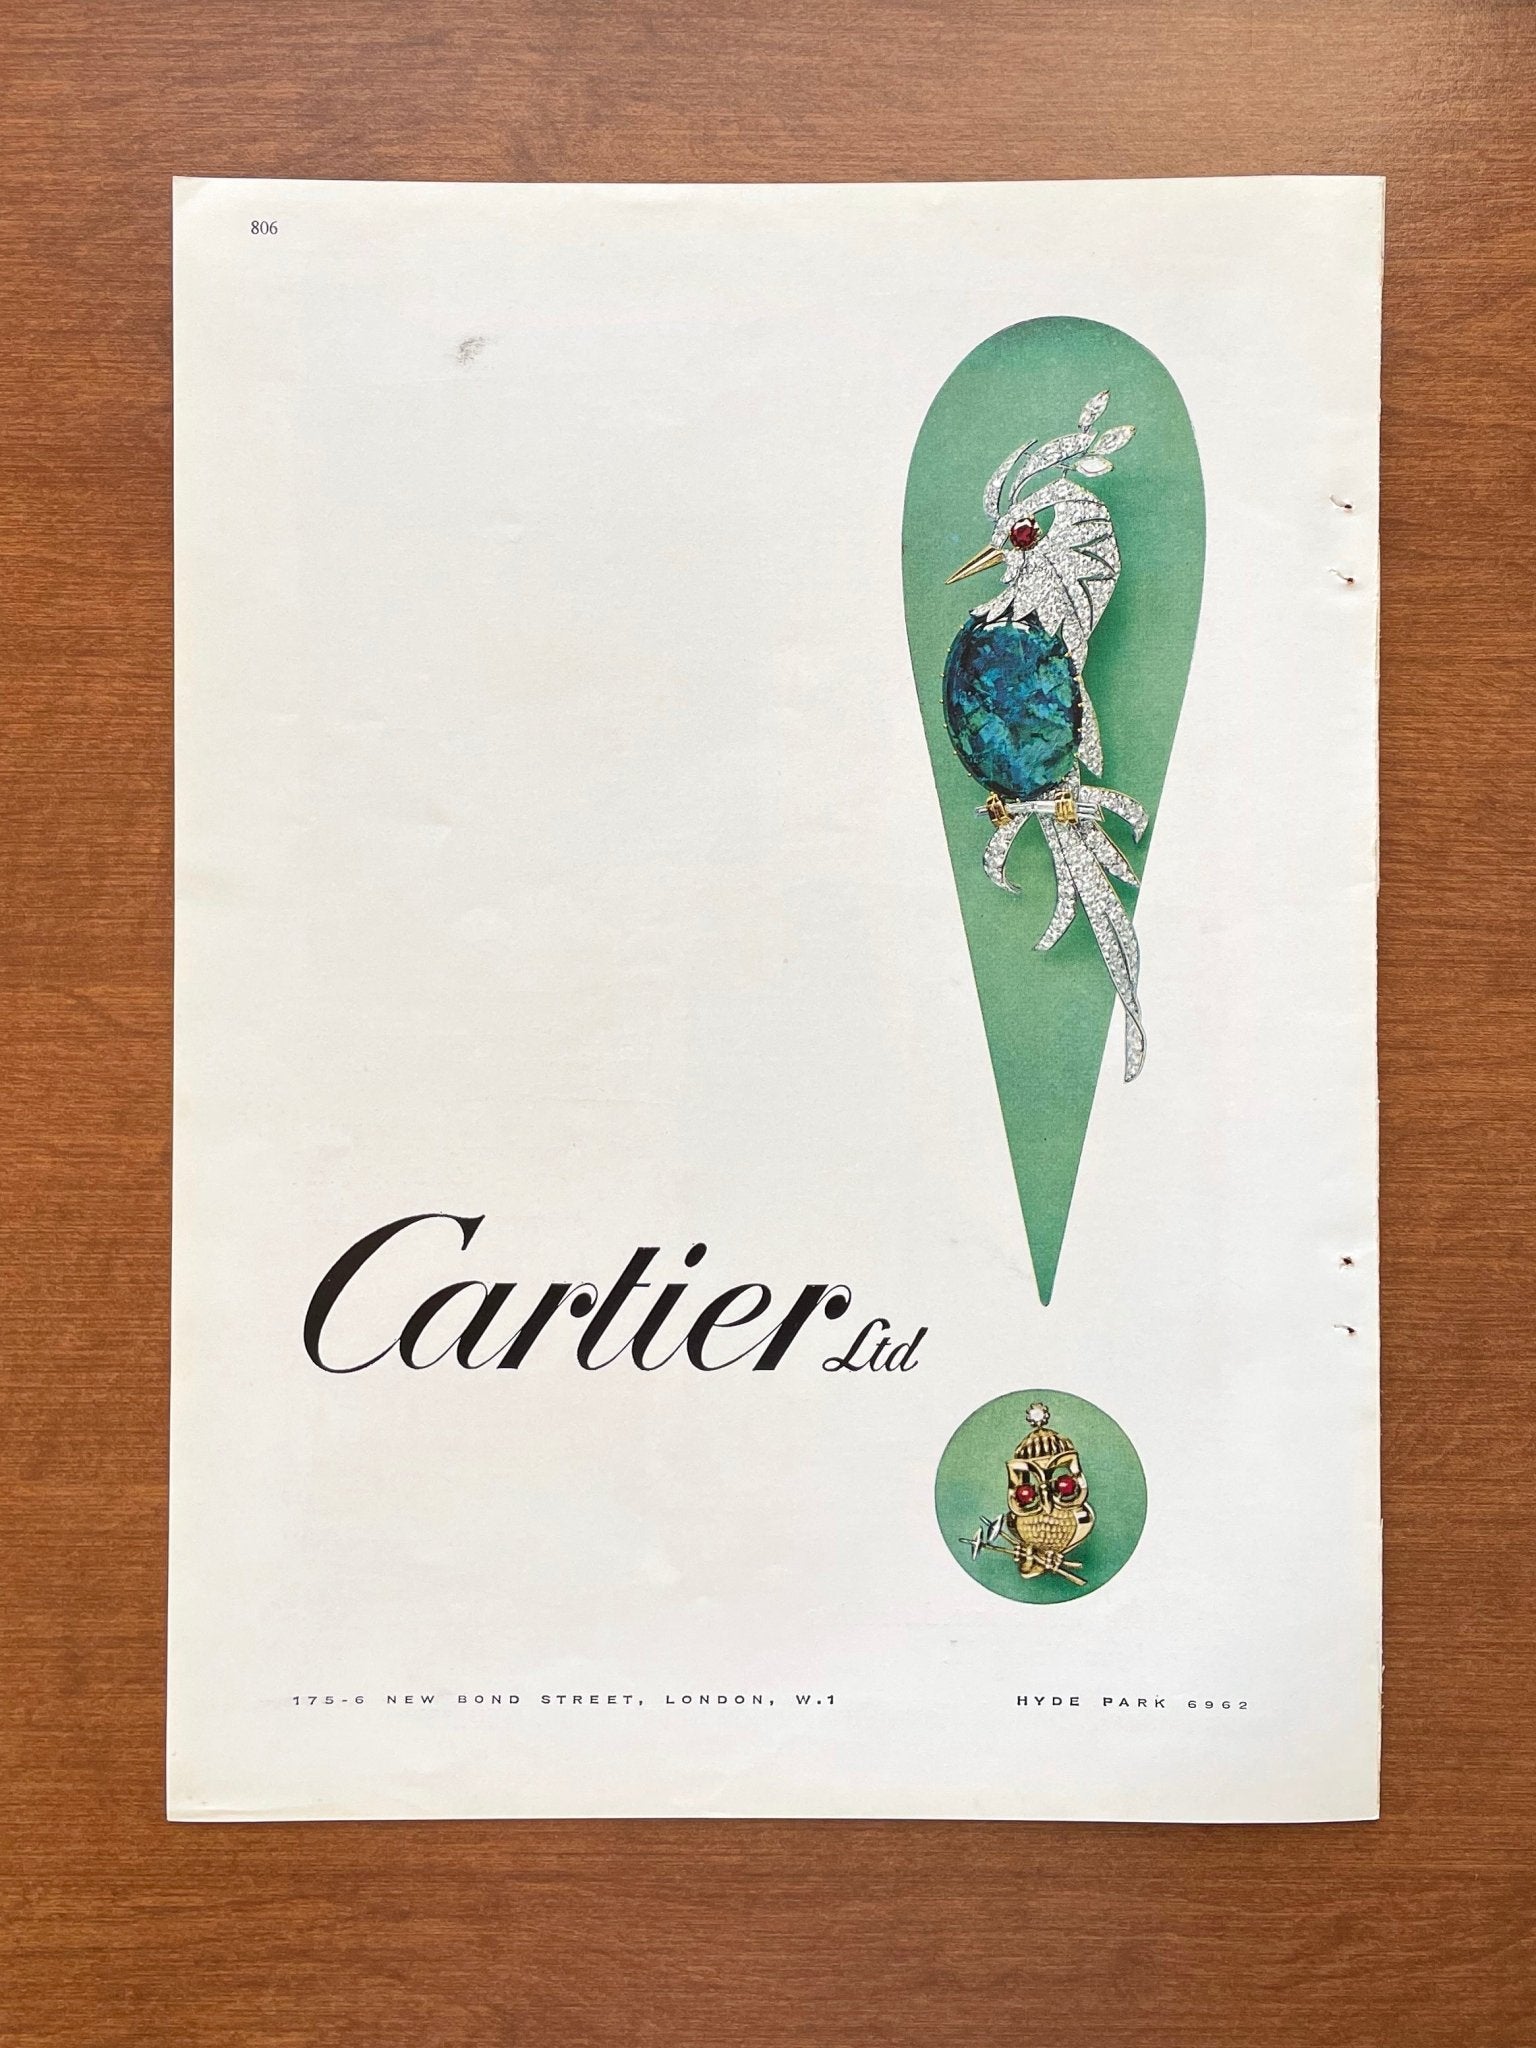 1966 Cartier Ltd. Advertisement